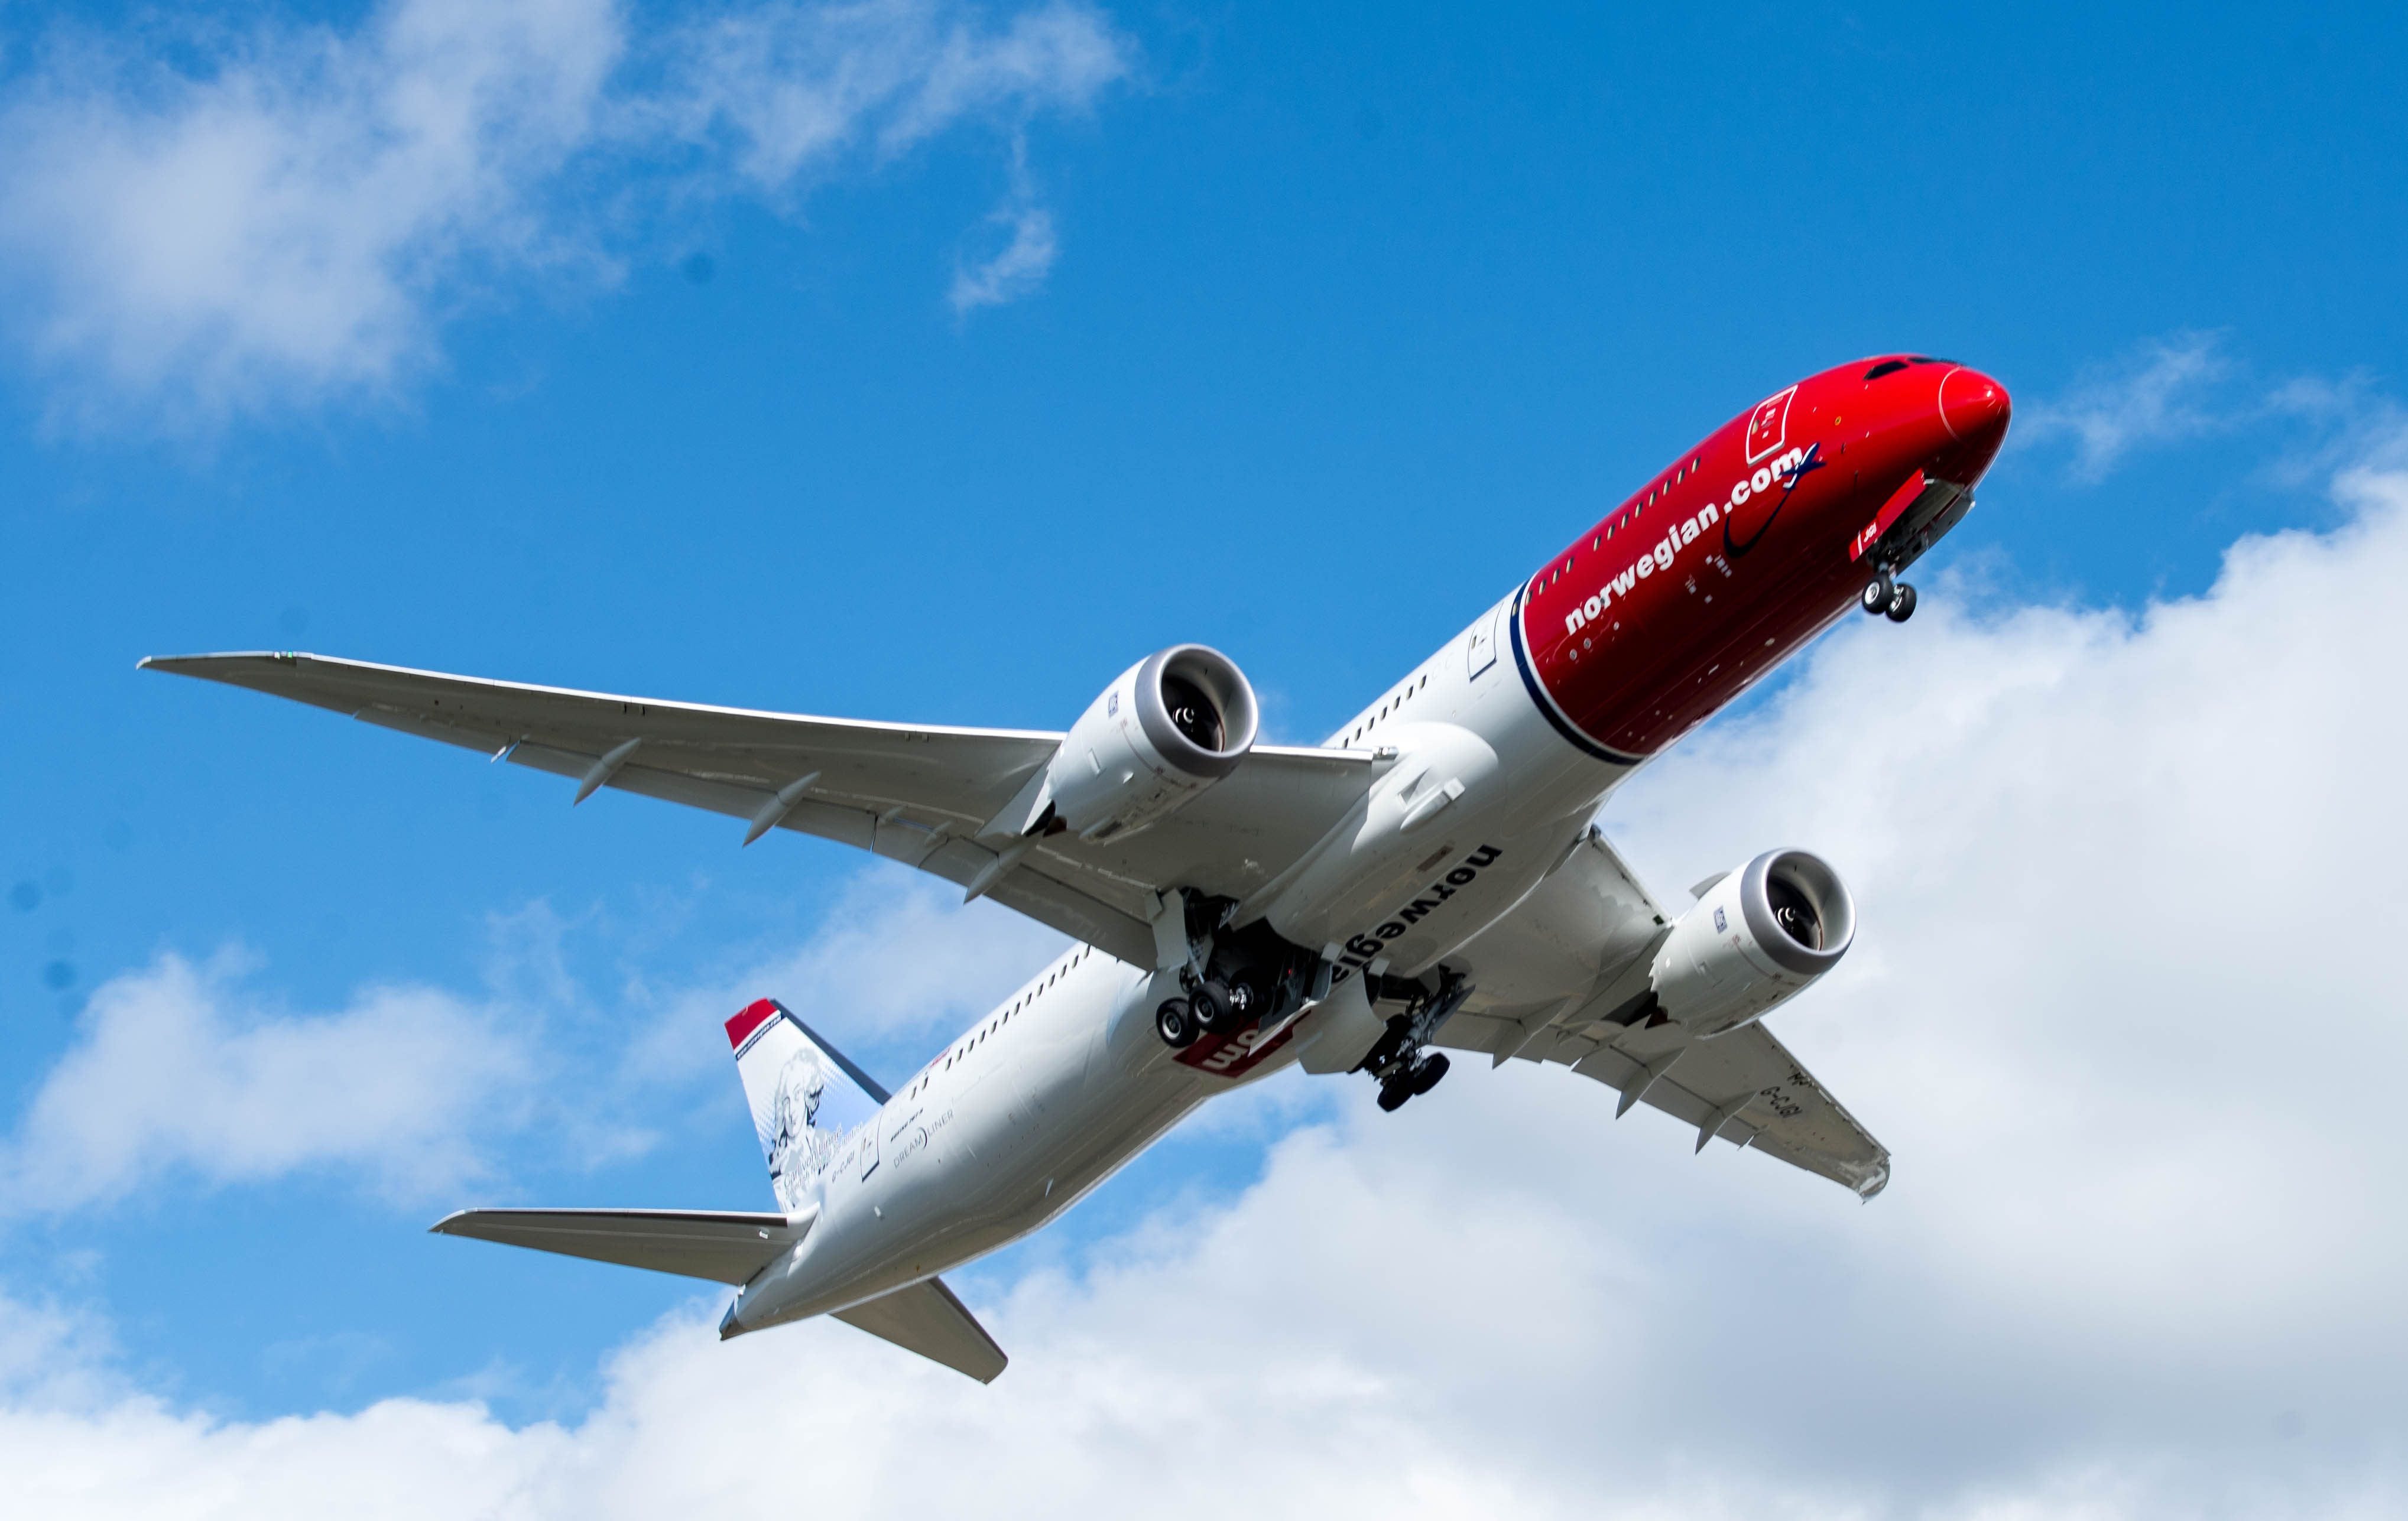 Norwegian Air Shuttle quadruples losses in H1 2020